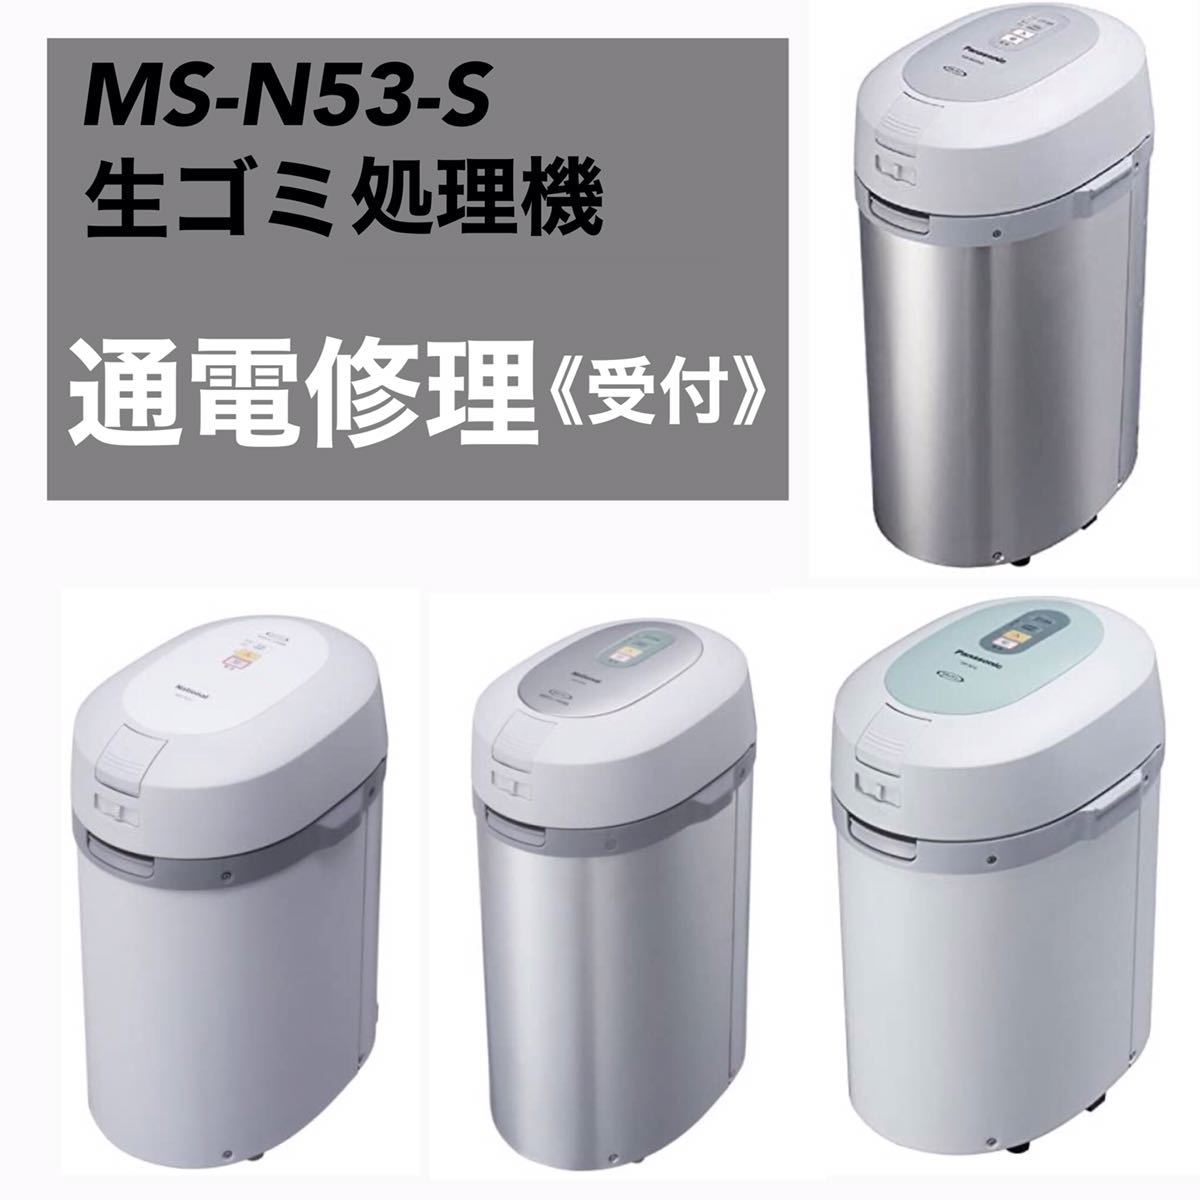 パナソニック 家庭用生ごみ処理機 リサイクラー シルバー MS-N48-S